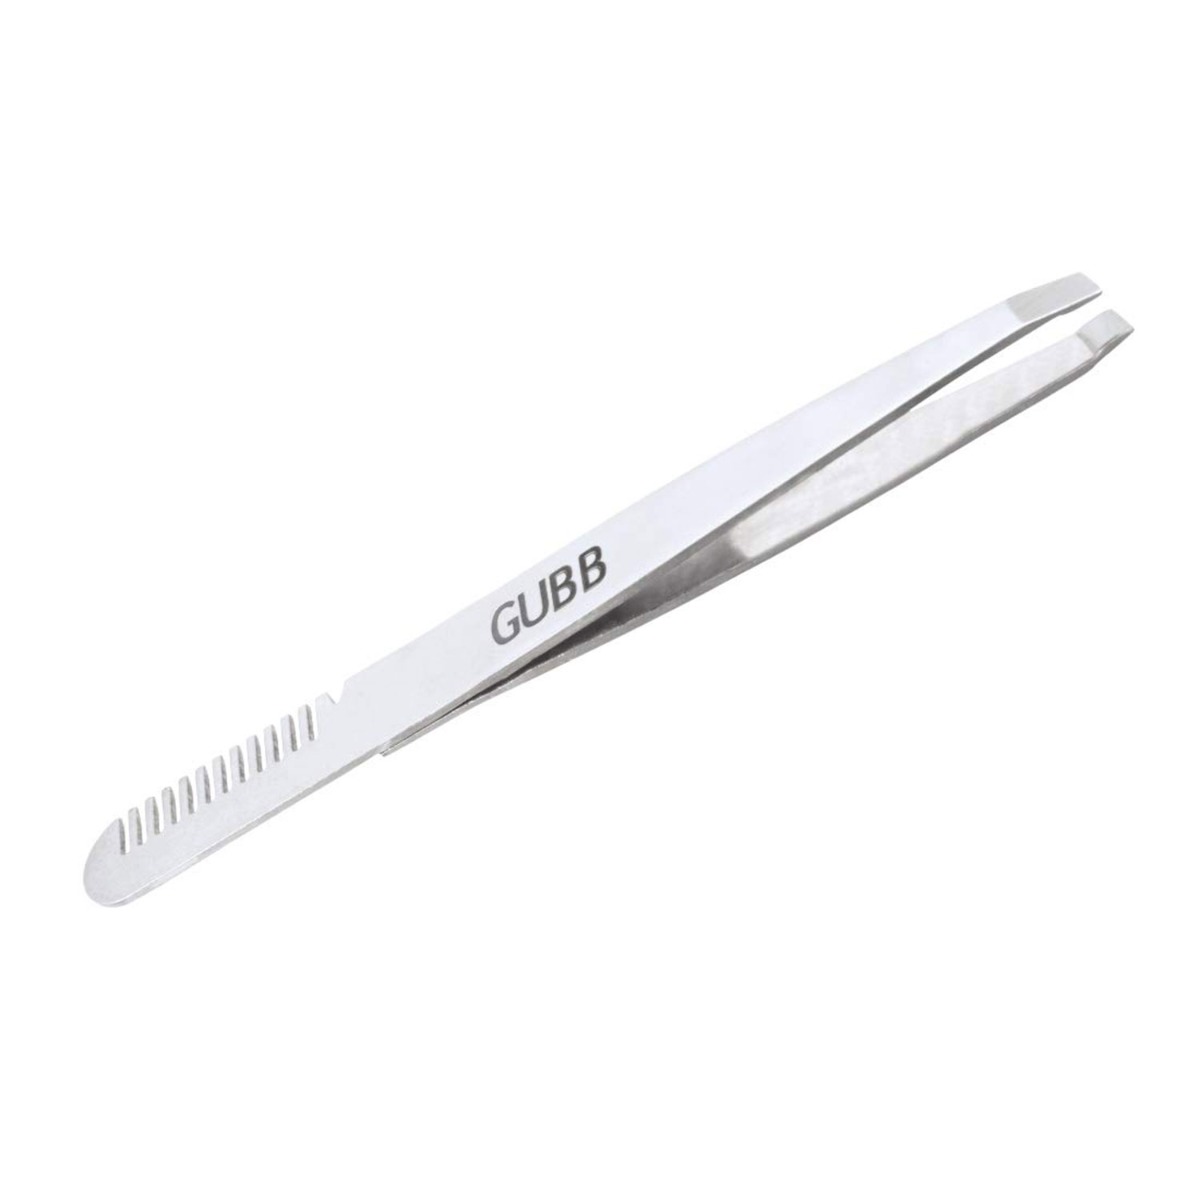 Gubb Dual Function Tweezer(With Brow Comb)